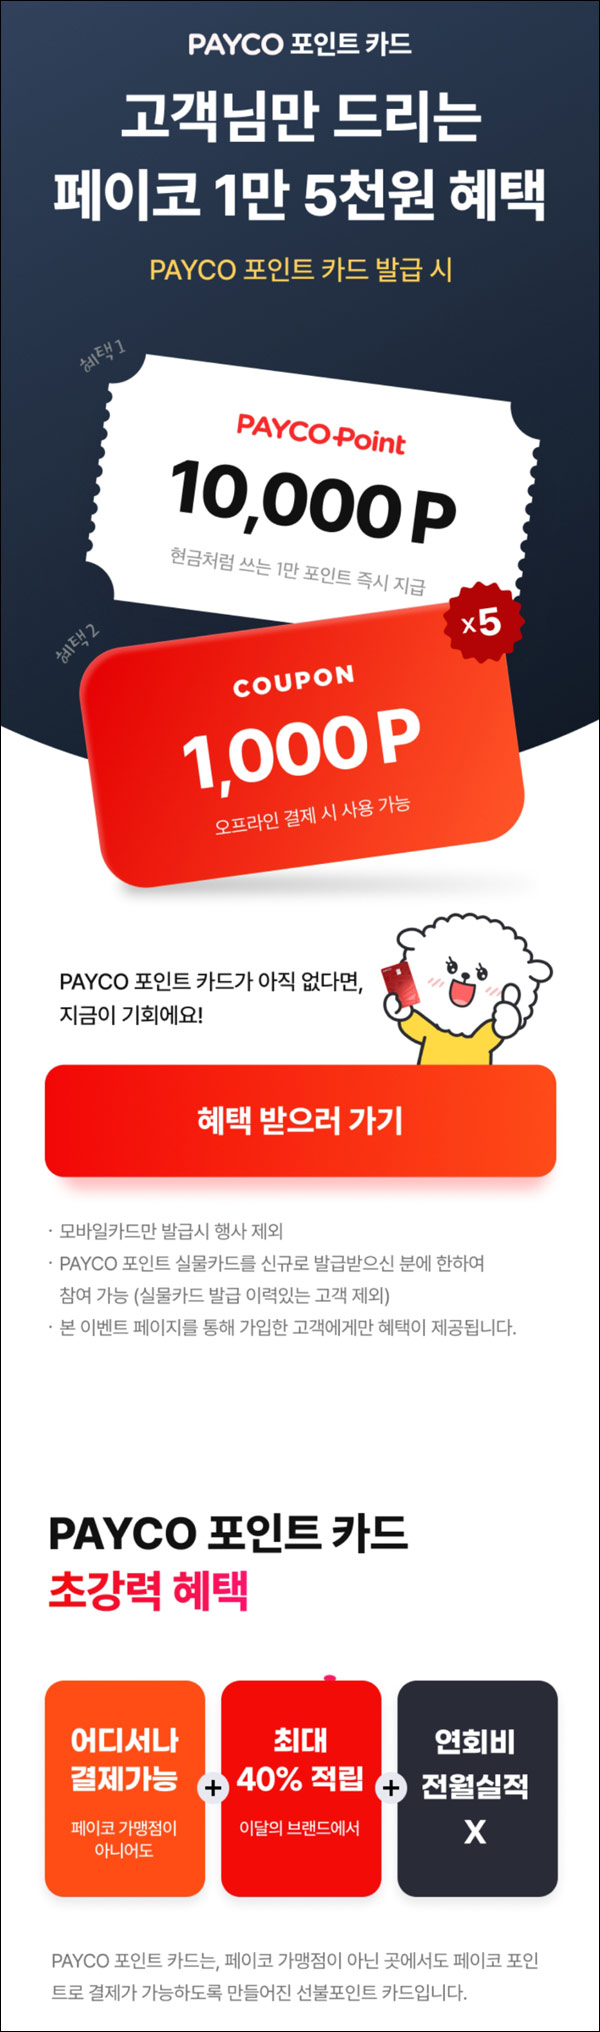 페이코 포인트카드 발급이벤트(2만p+쿠폰5천원)타겟링크 ~08.15